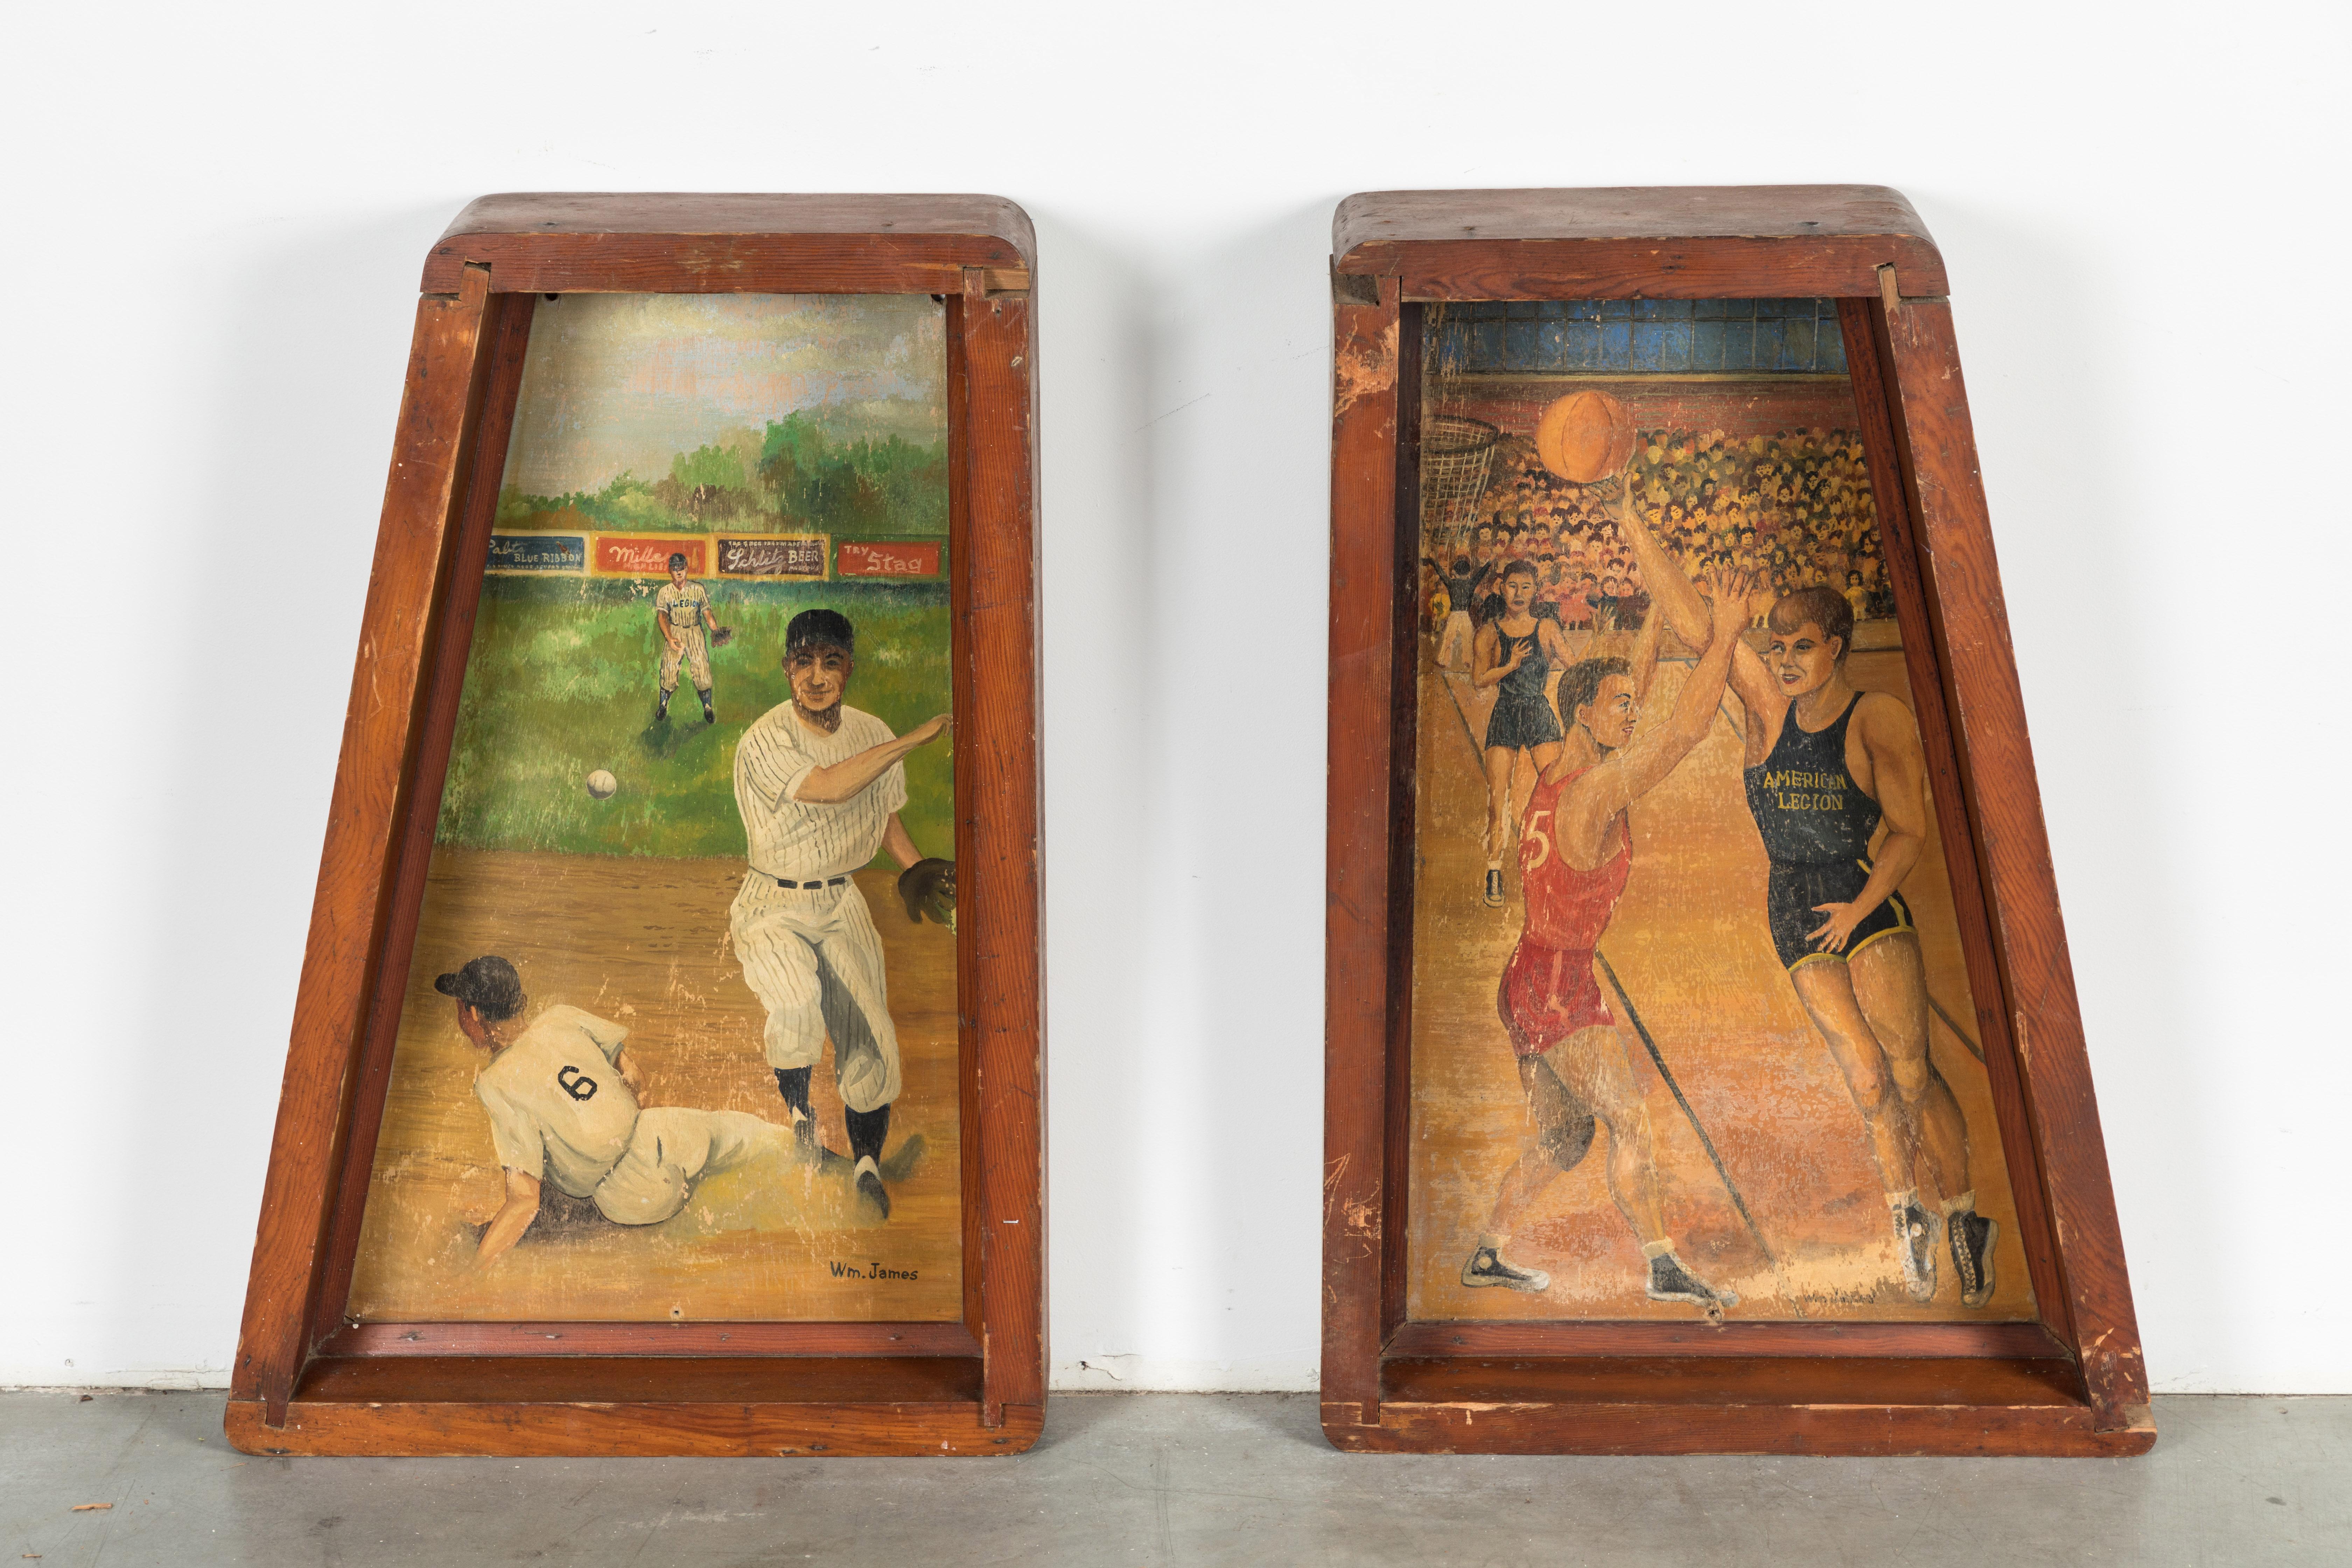 Paire de tableaux de baseball et de basket-ball trouvés dans une salle de la Légion américaine du Midwest. Ils étaient fièrement exposés derrière le bar de la salle de la légion. Superbes sujets liés au sport. La peinture de baseball montre des